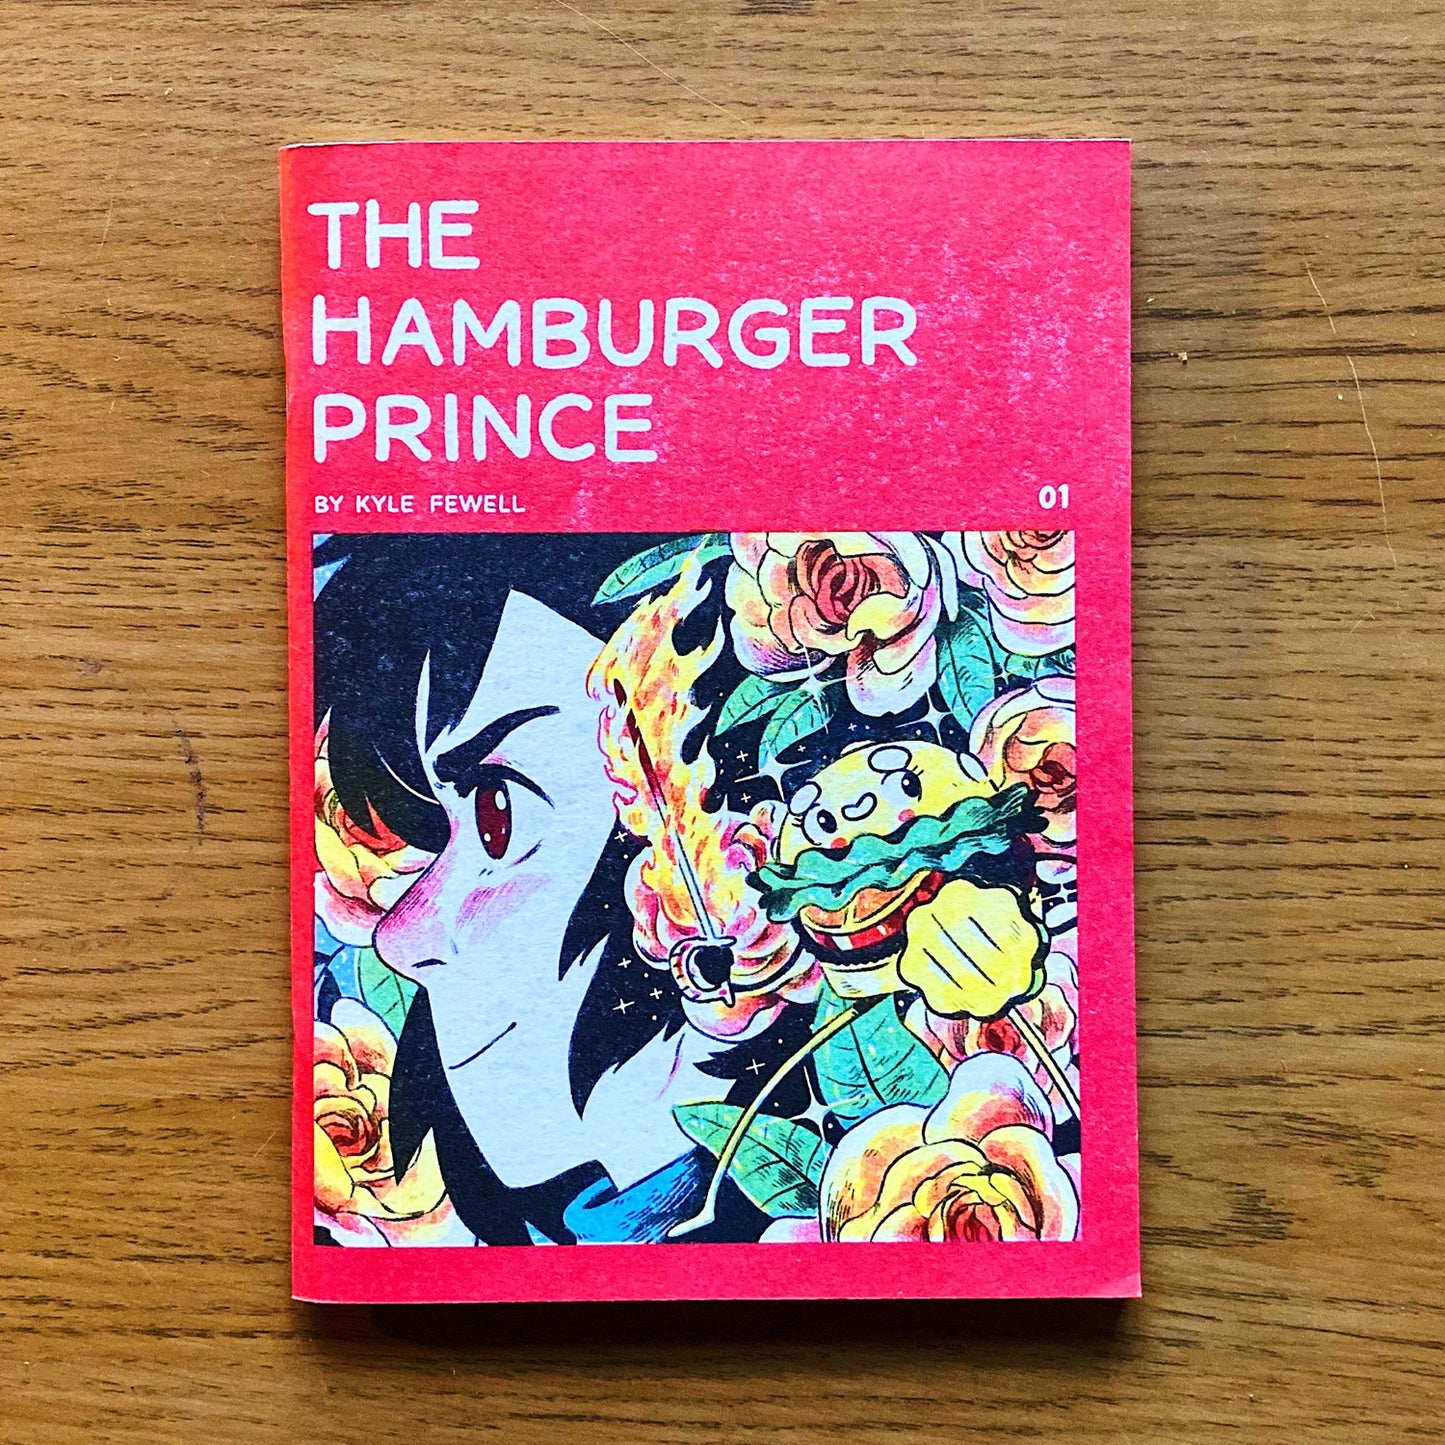 The Hamburger Prince